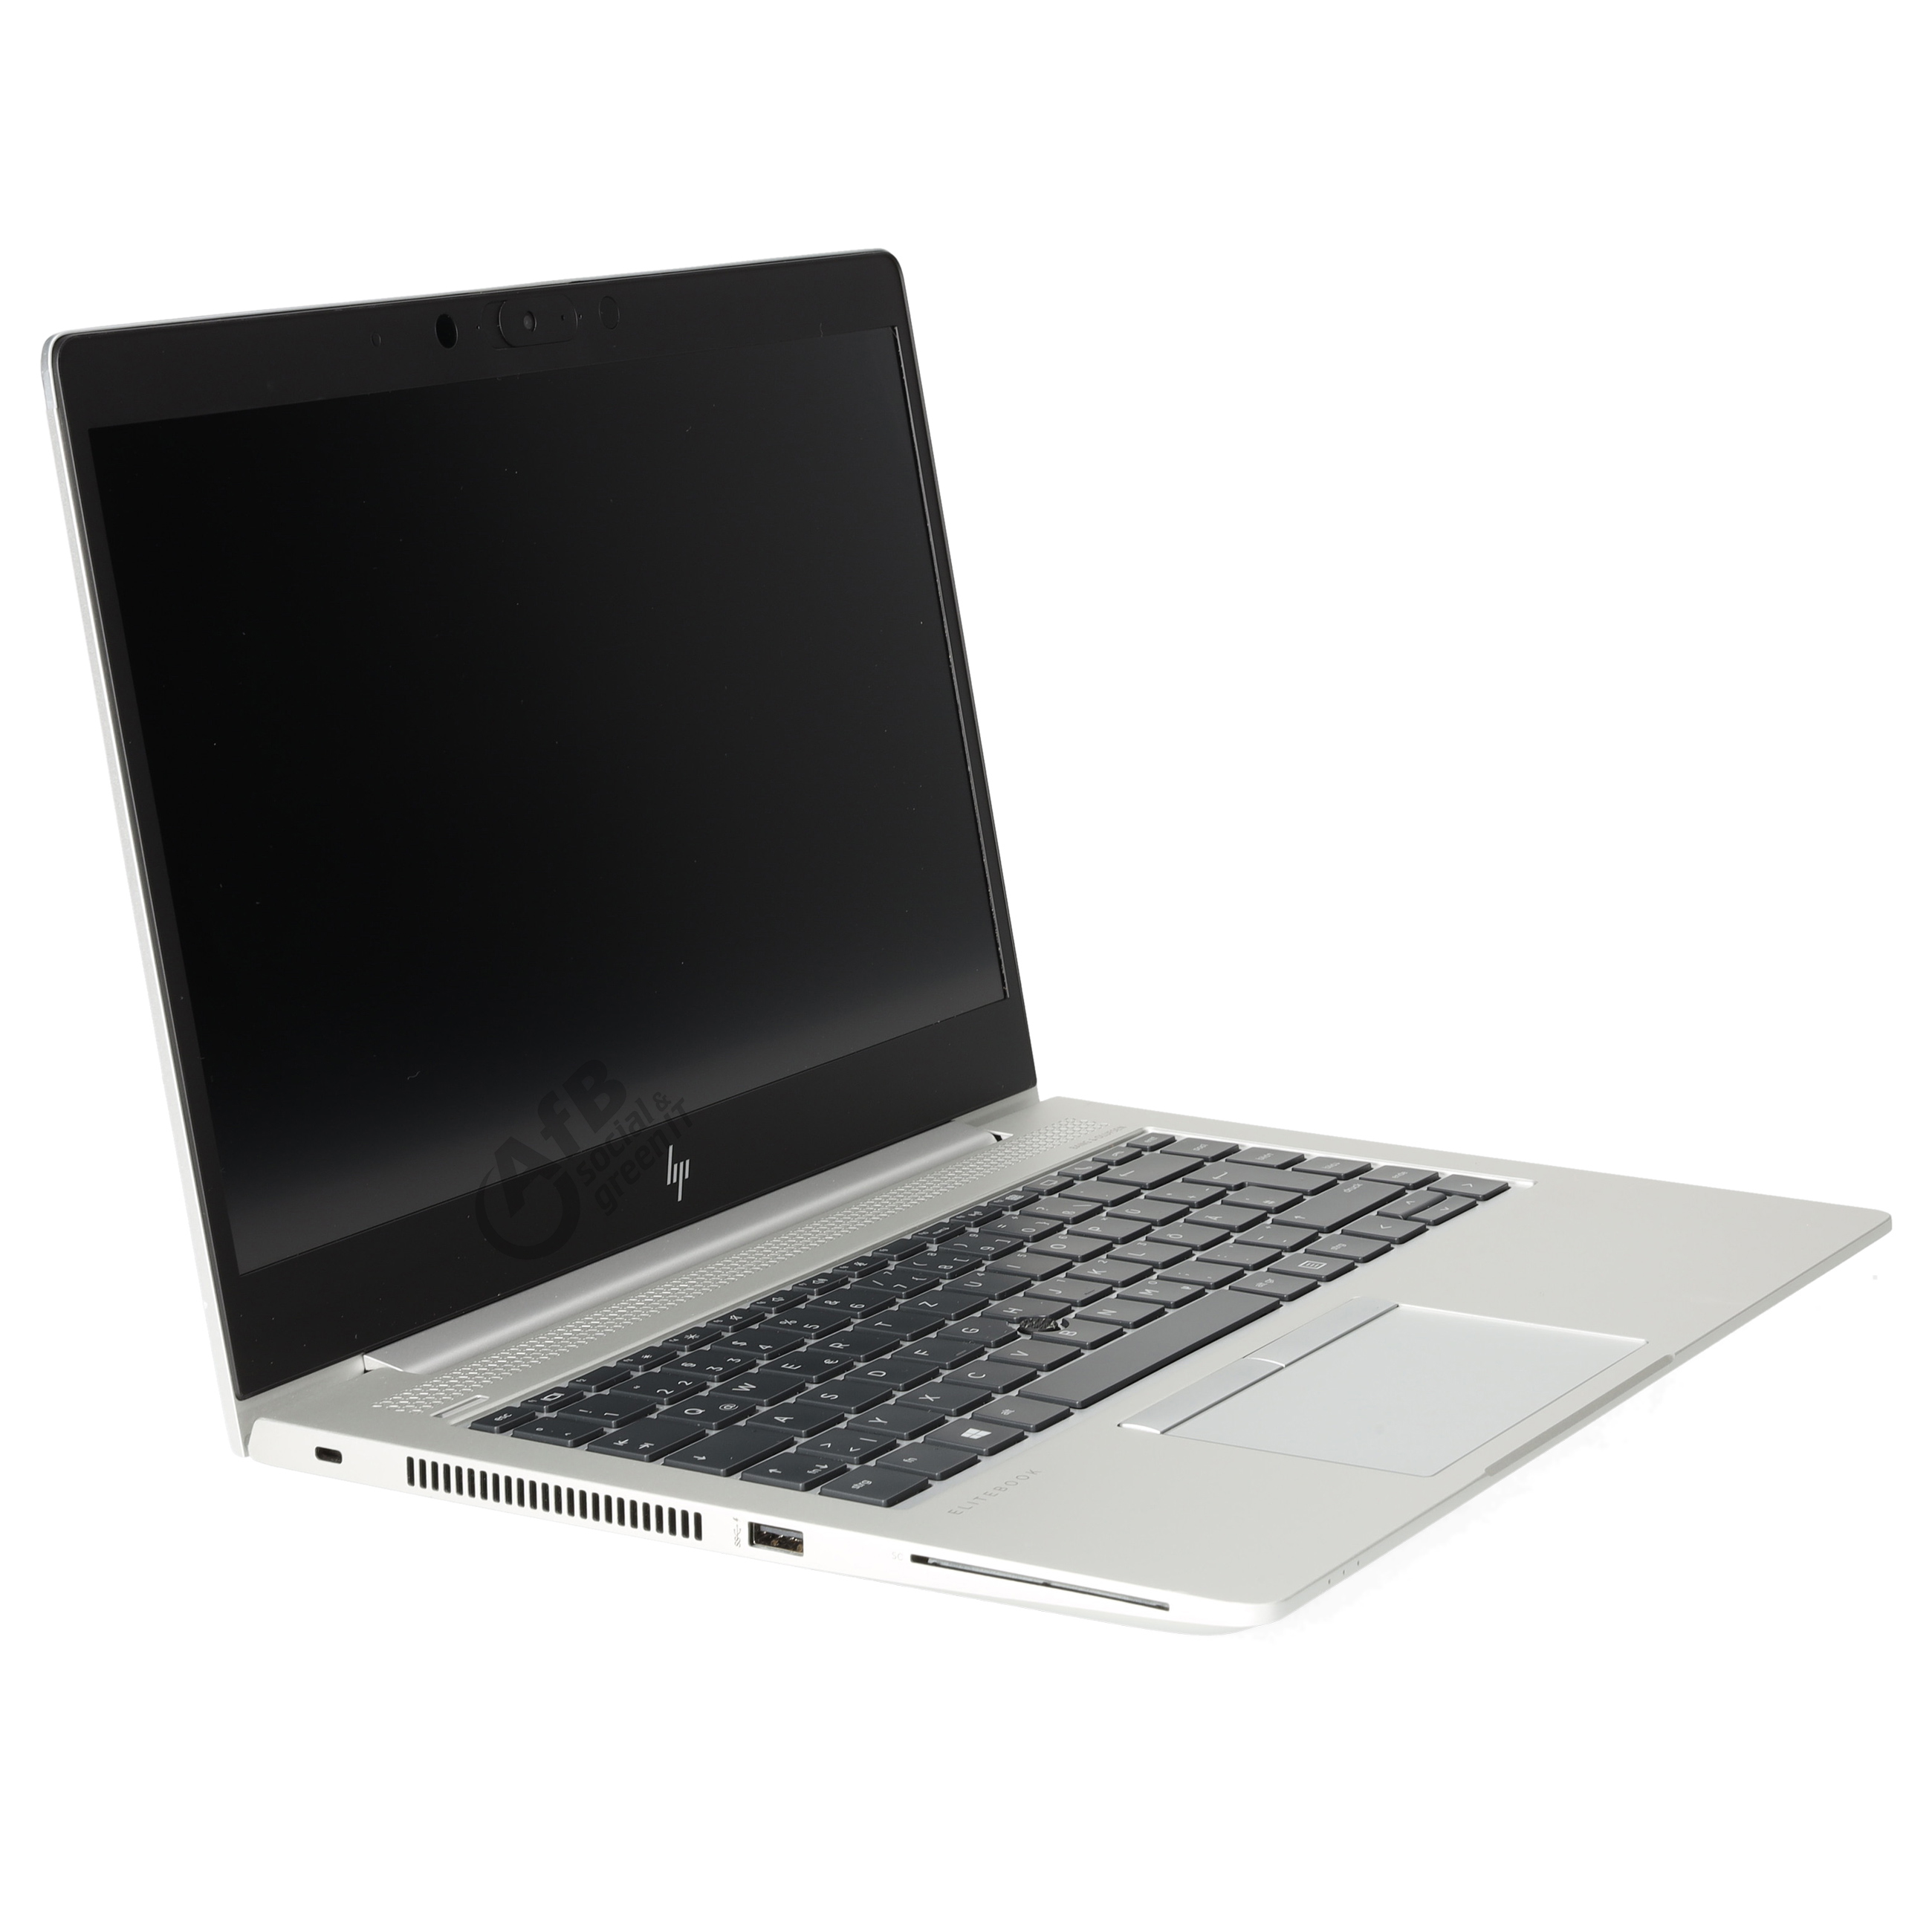 HP EliteBook 745 G5 

 - 14,0 Zoll - AMD Ryzen 5 Pro 2500U @ 2,0 GHz - 8 GB DDR4 - 250 GB SSD - 1920 x 1080 FHD - Windows 10 Professional